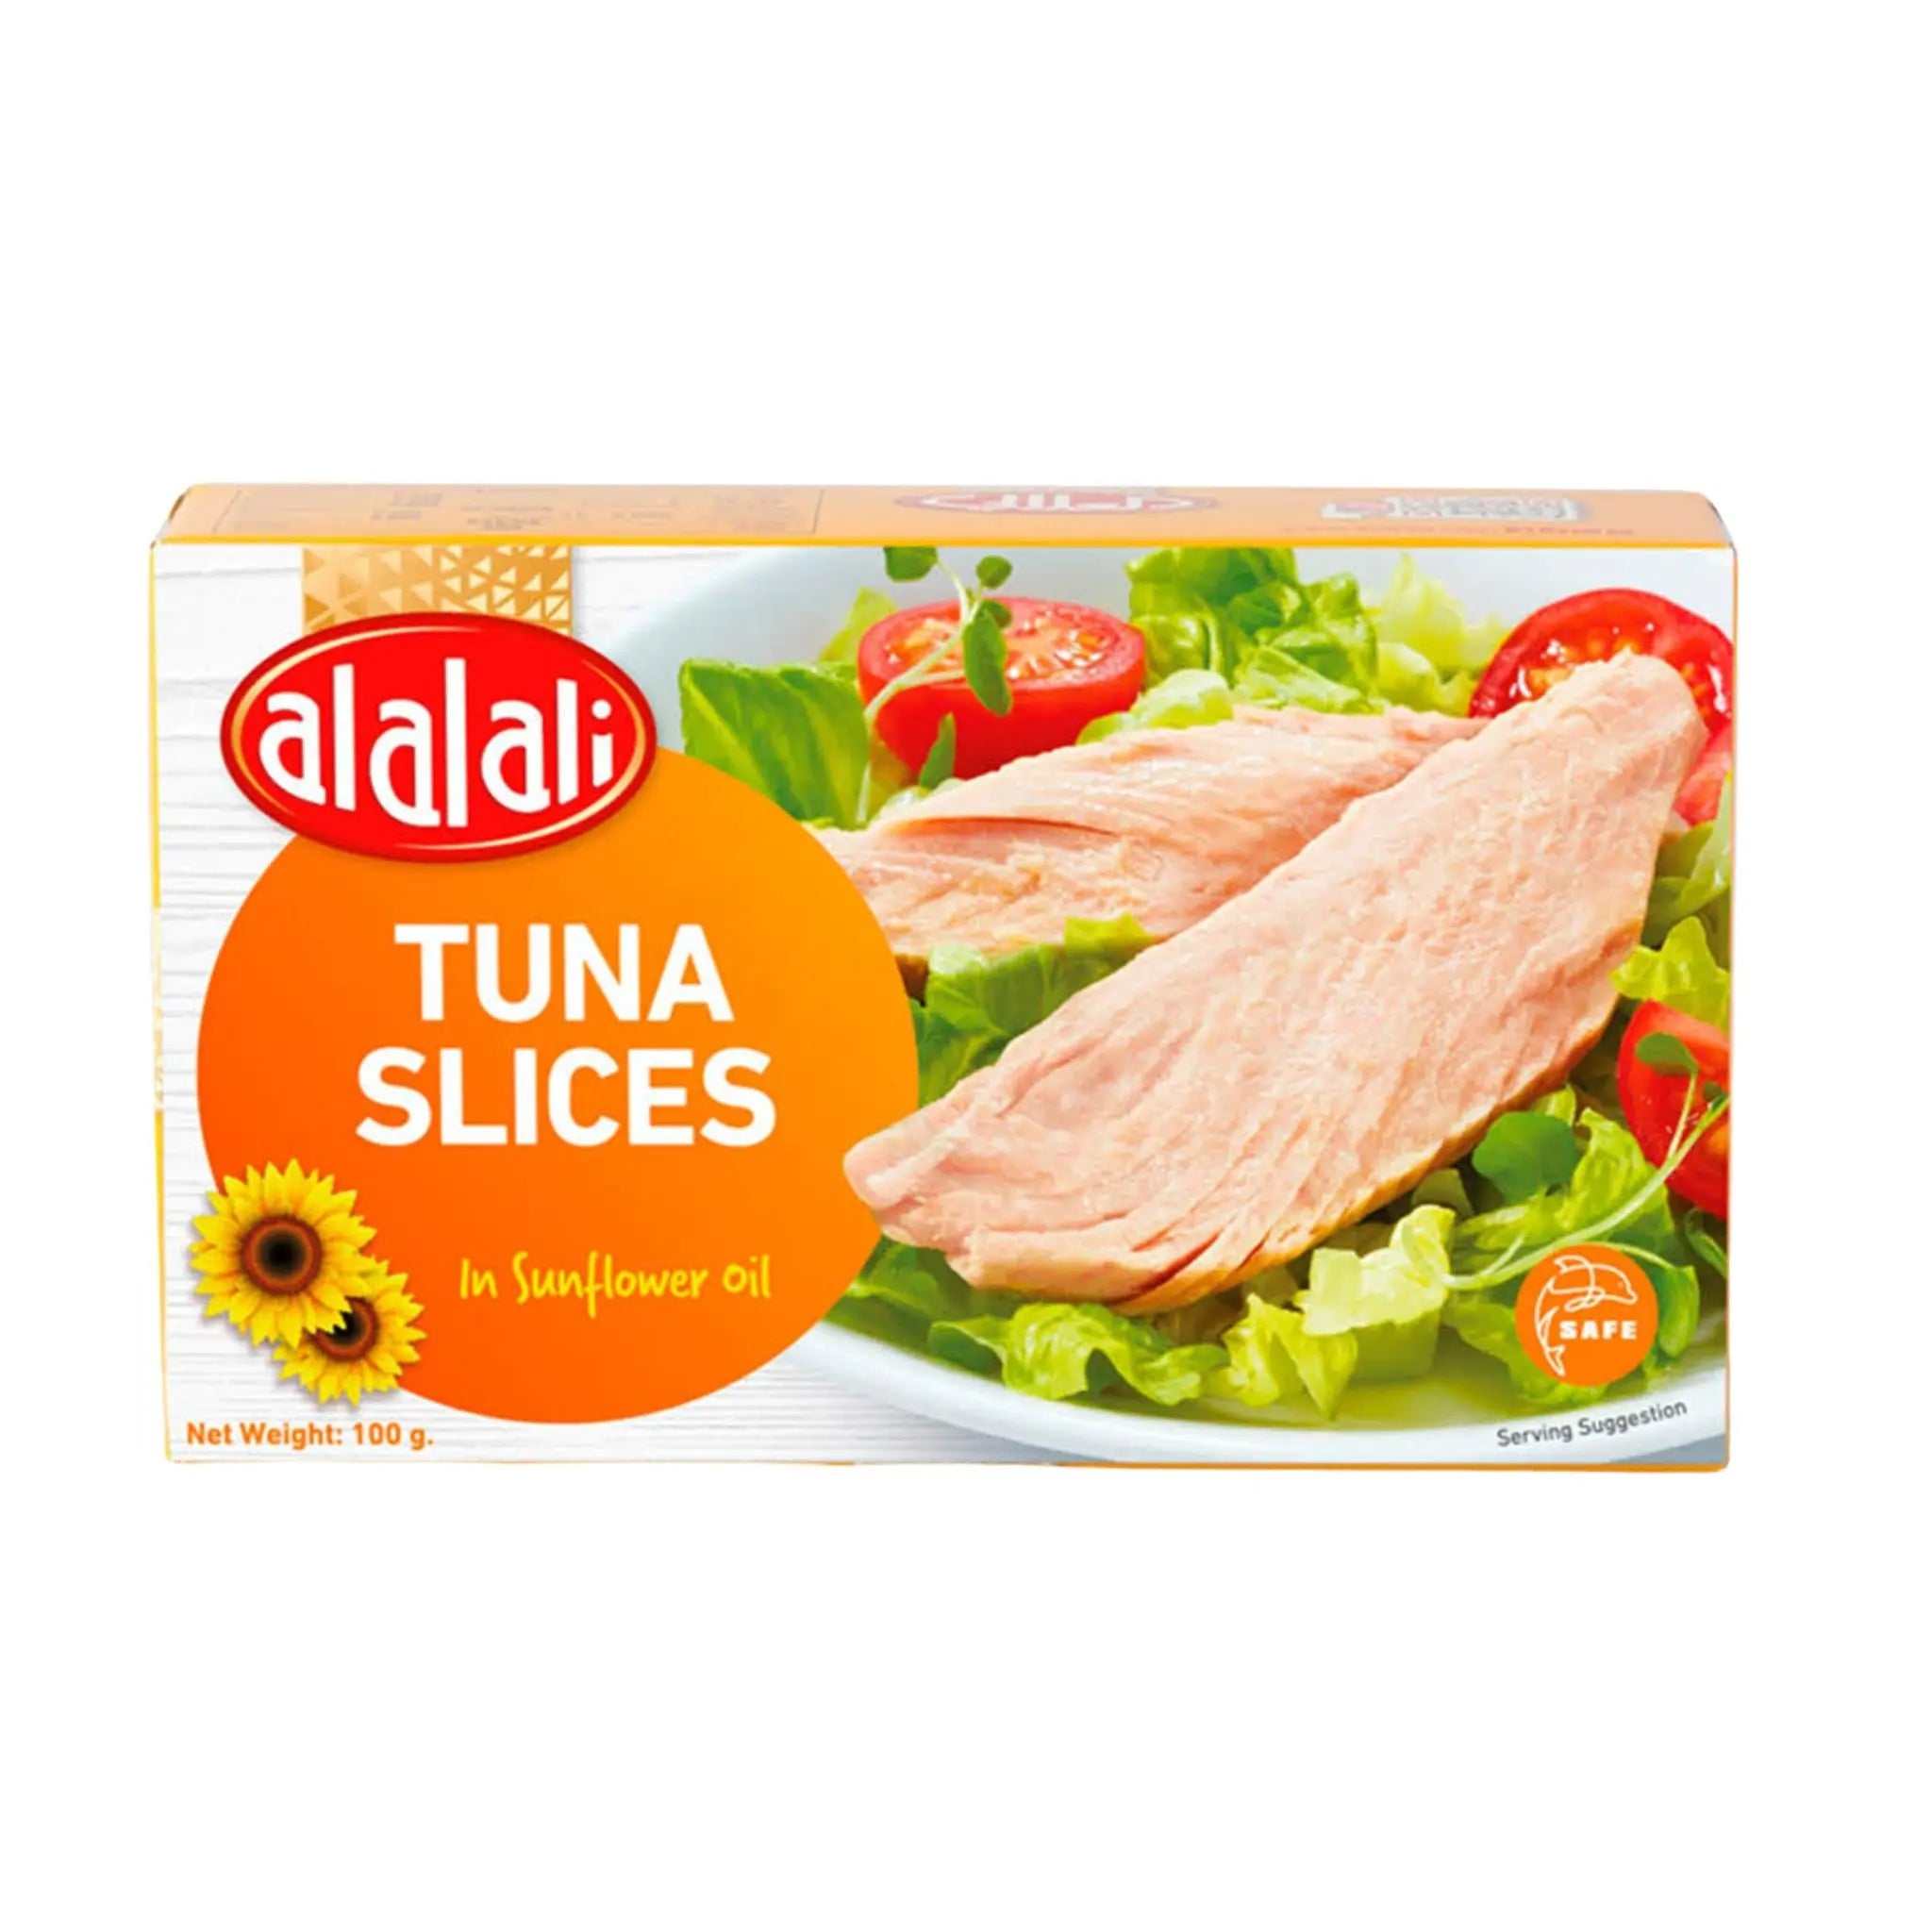 Al Alali Tuna Slices in Sunflower Oil - 12x160g (1 Carton) Marino.AE